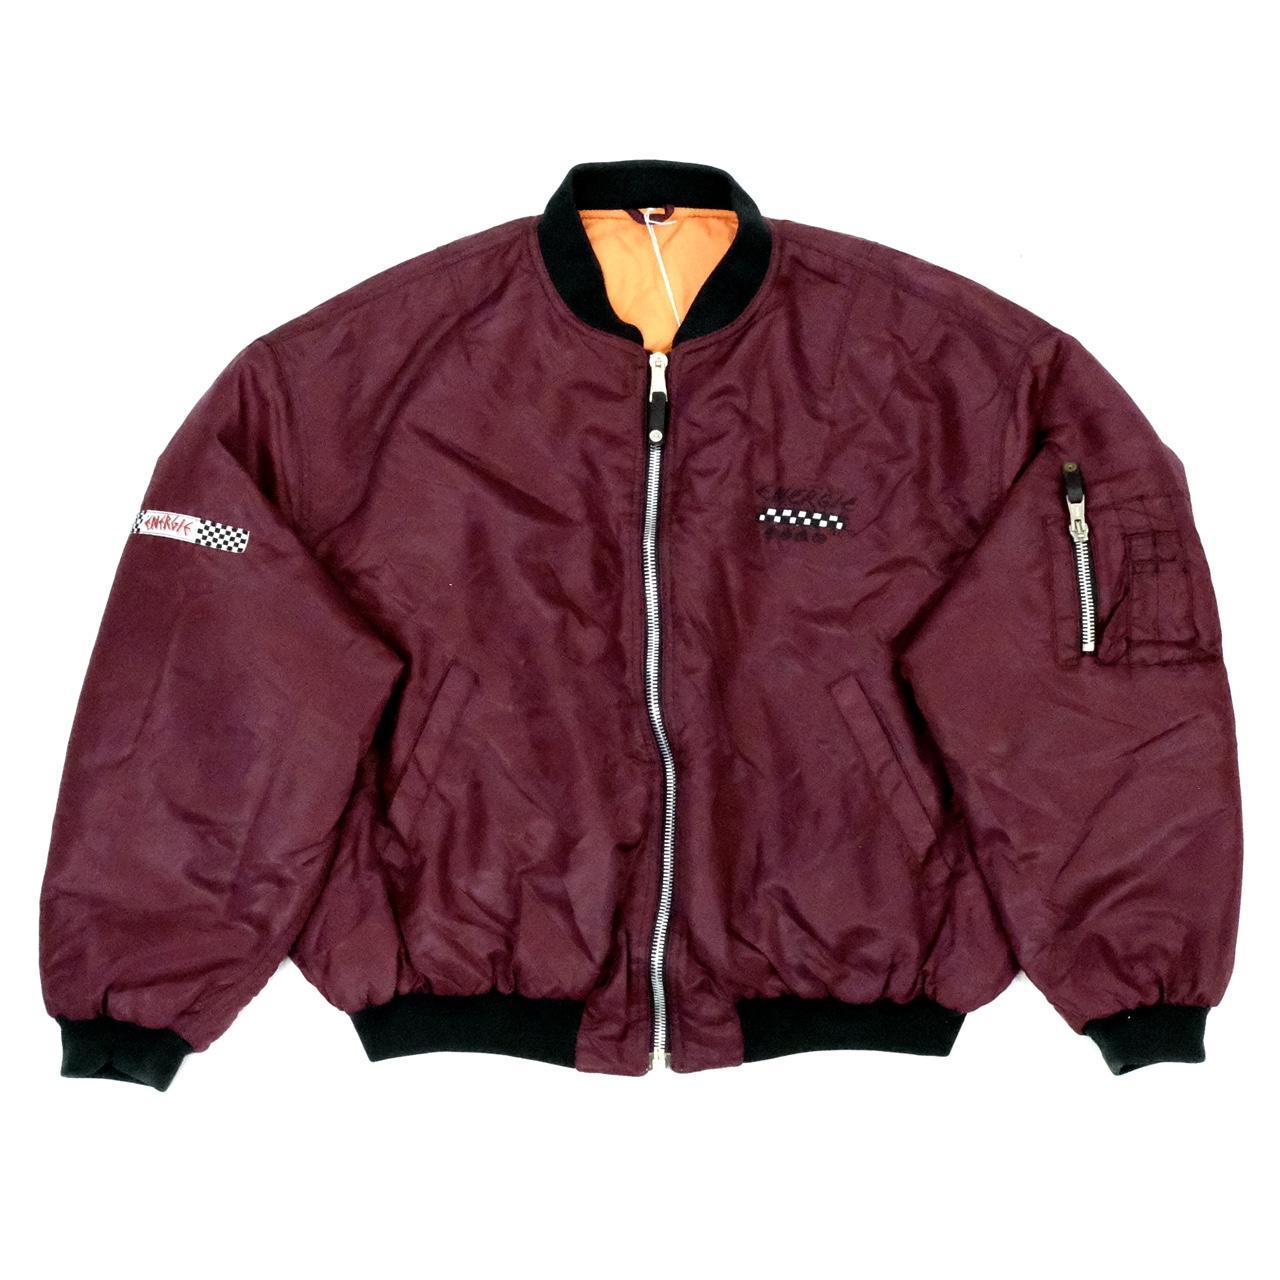 Vintage Energie reversible jacket